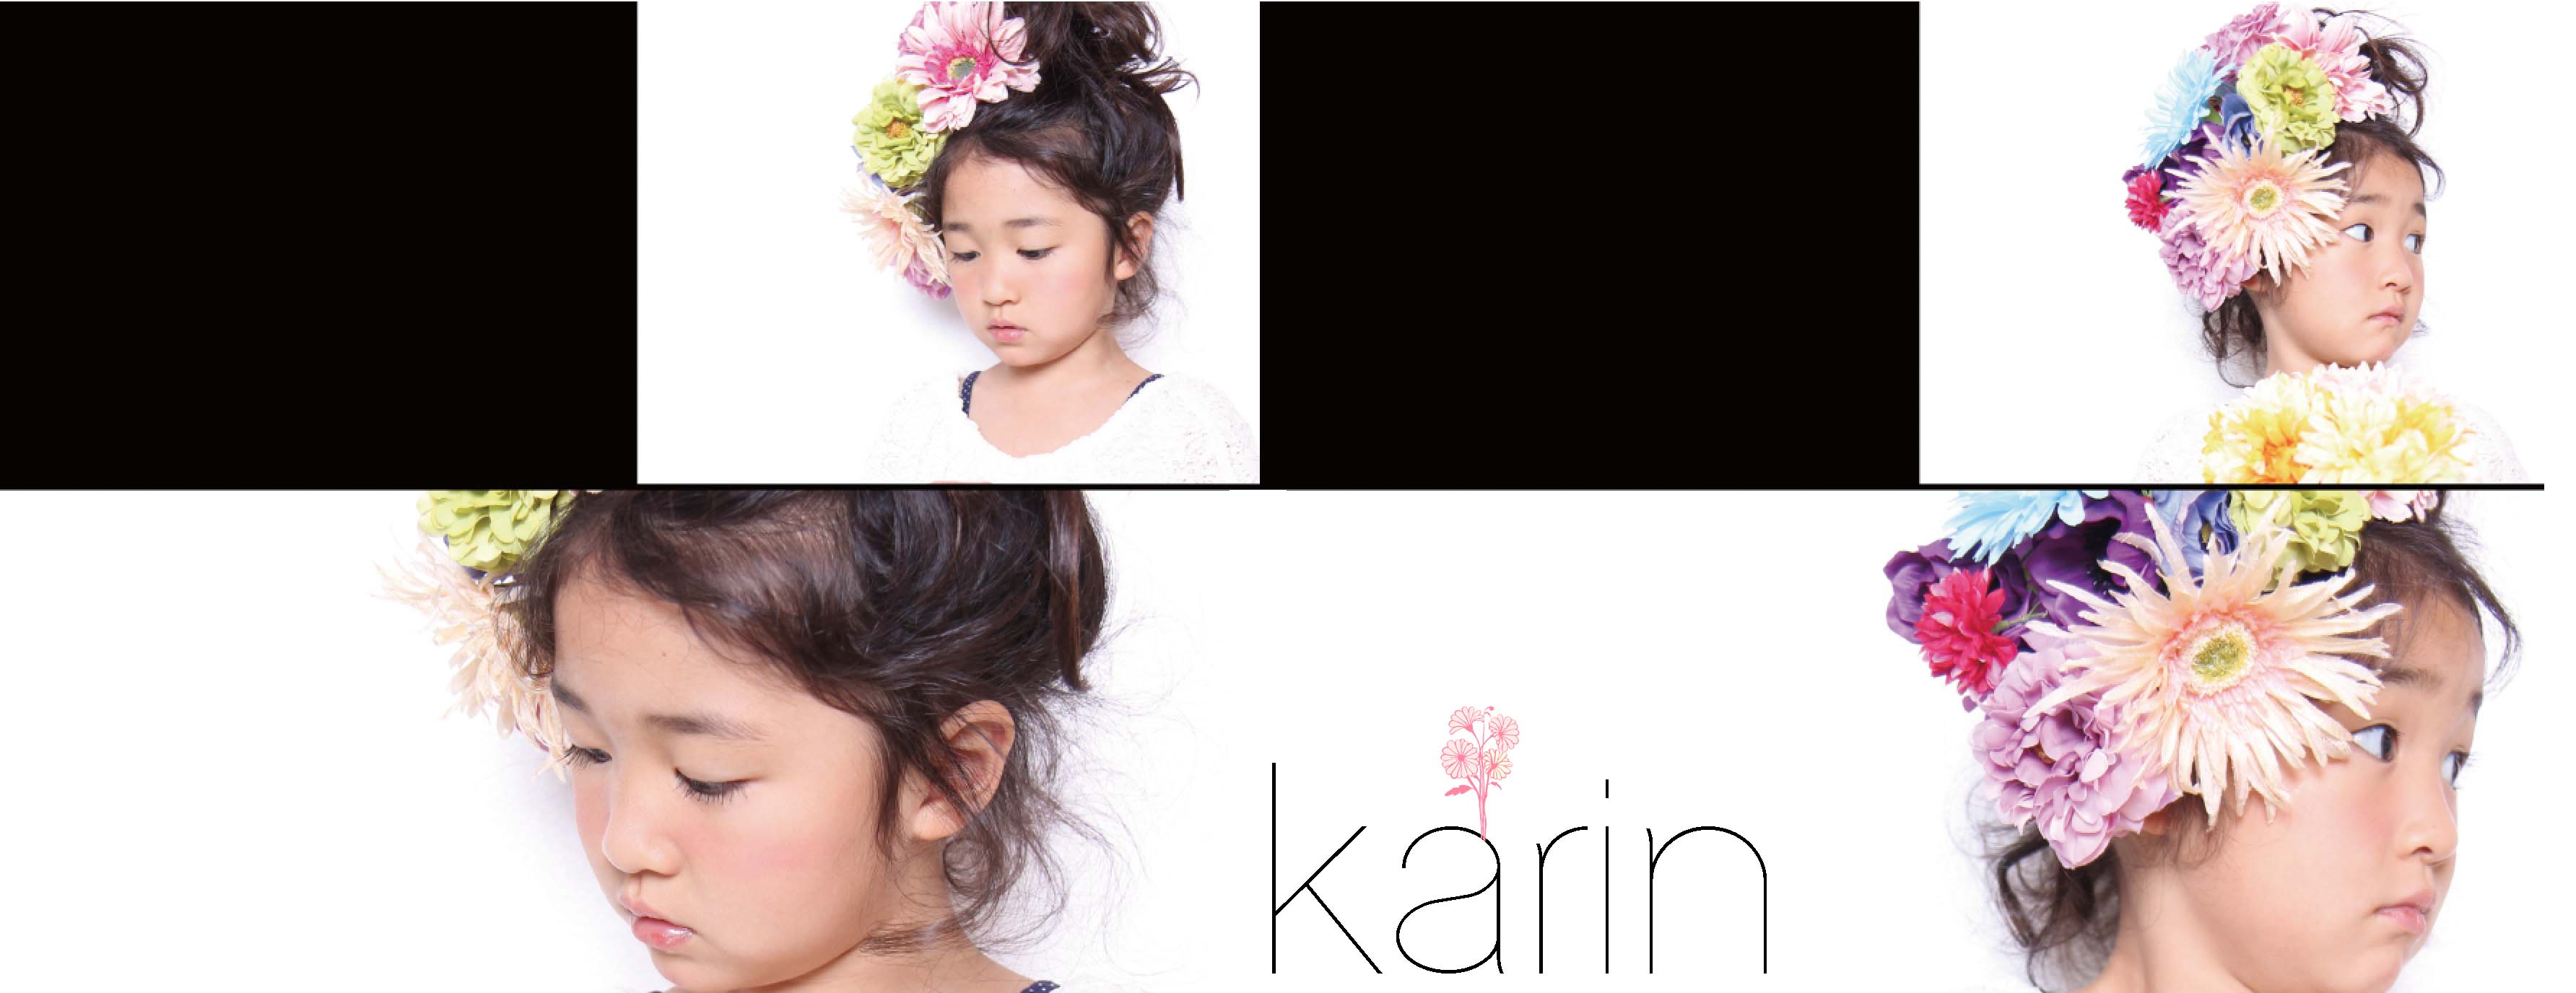 karin_flower.jpg